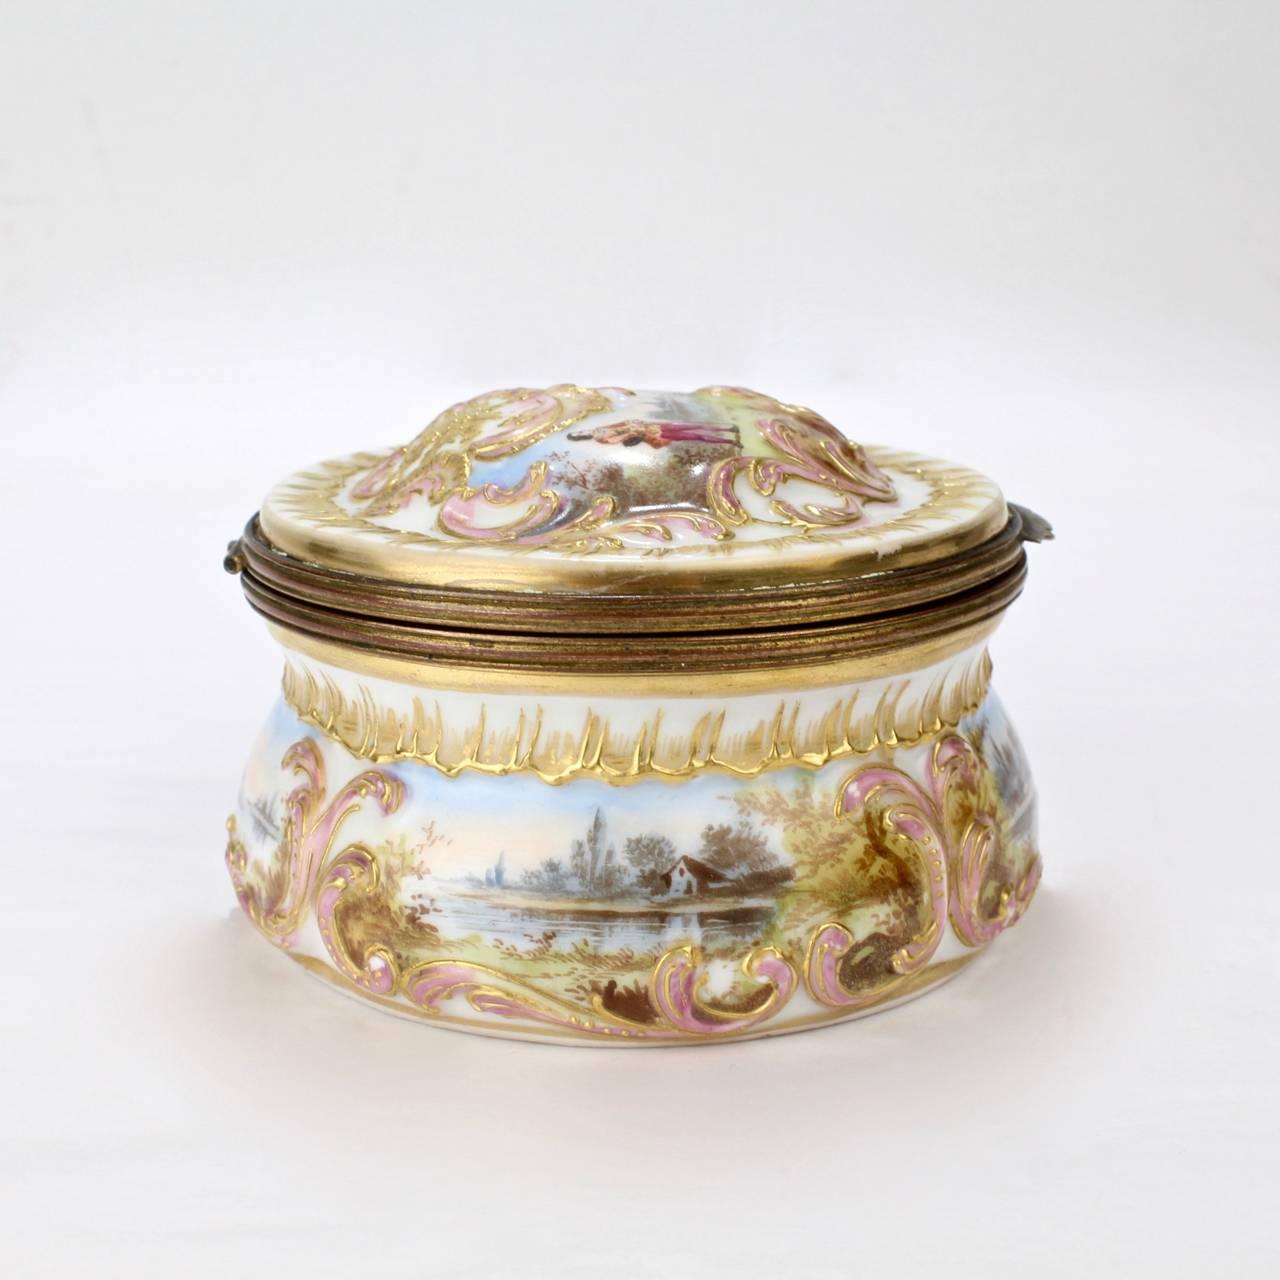 Rococo Revival Antique Gilt Paris Porcelain Table Snuff Box or Round Casket by Bloch & Bourdois For Sale